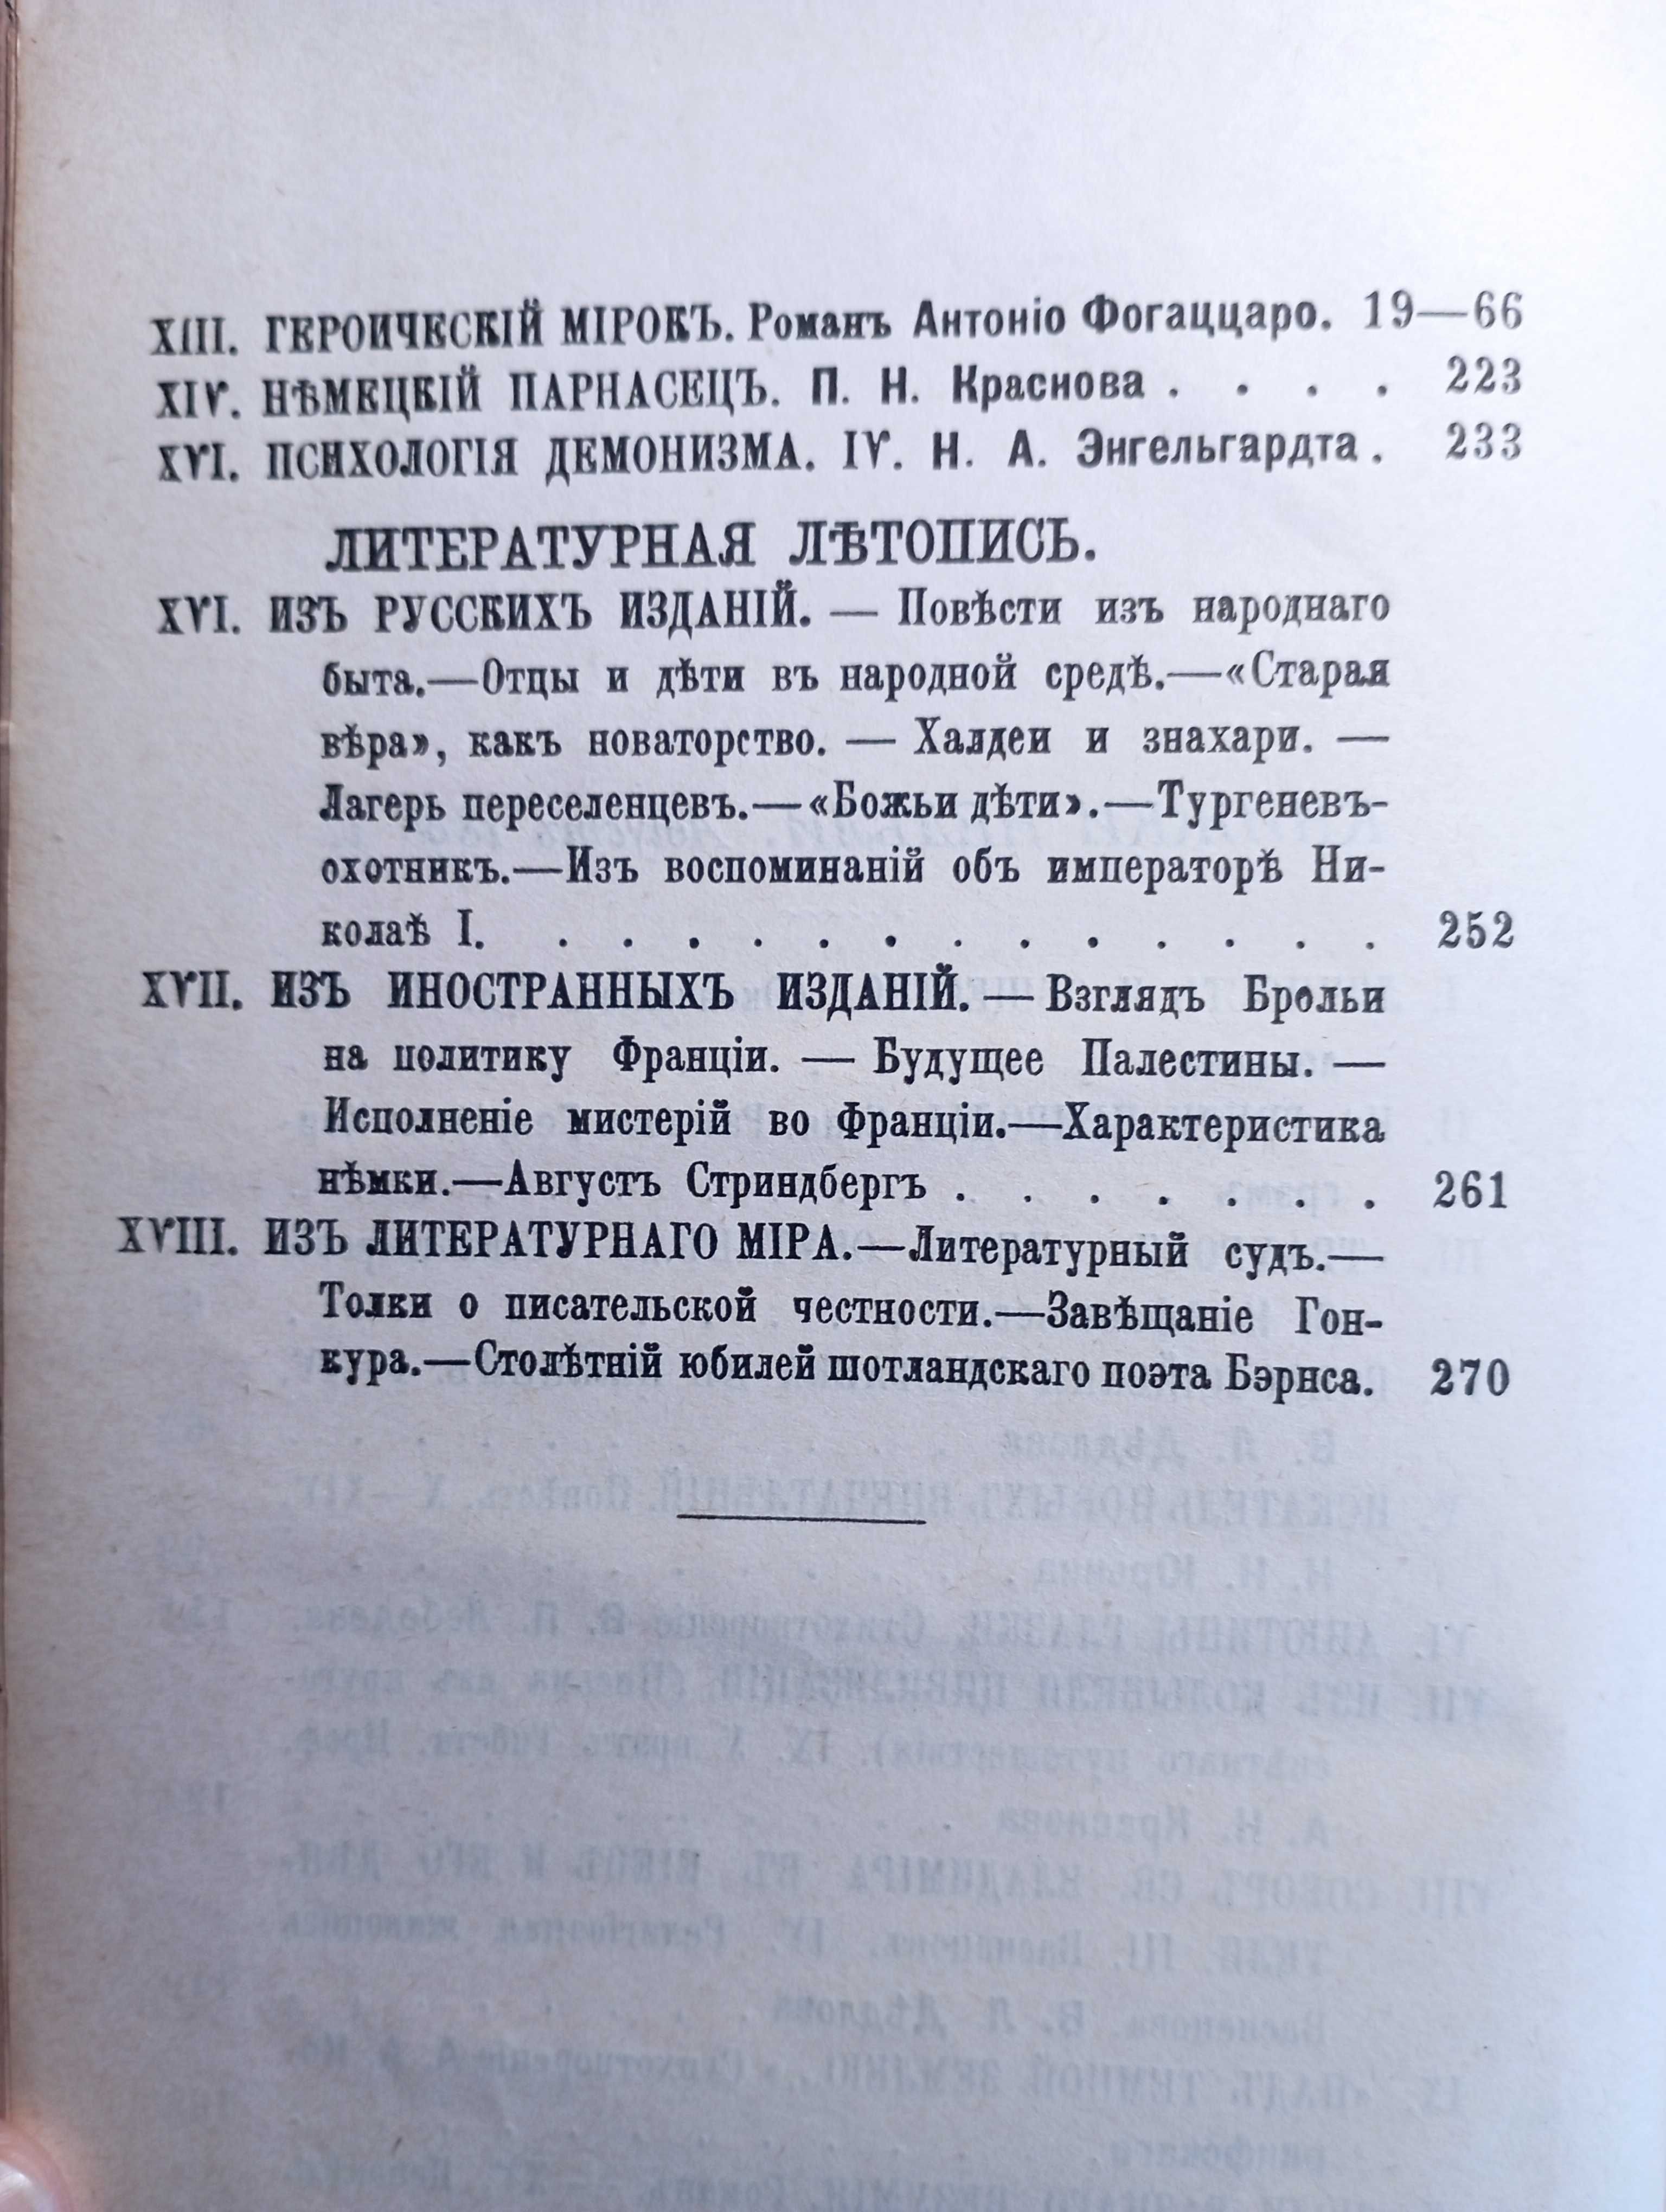 "Книжки недели", Ежемесячный литературный журнал, Август 1896!